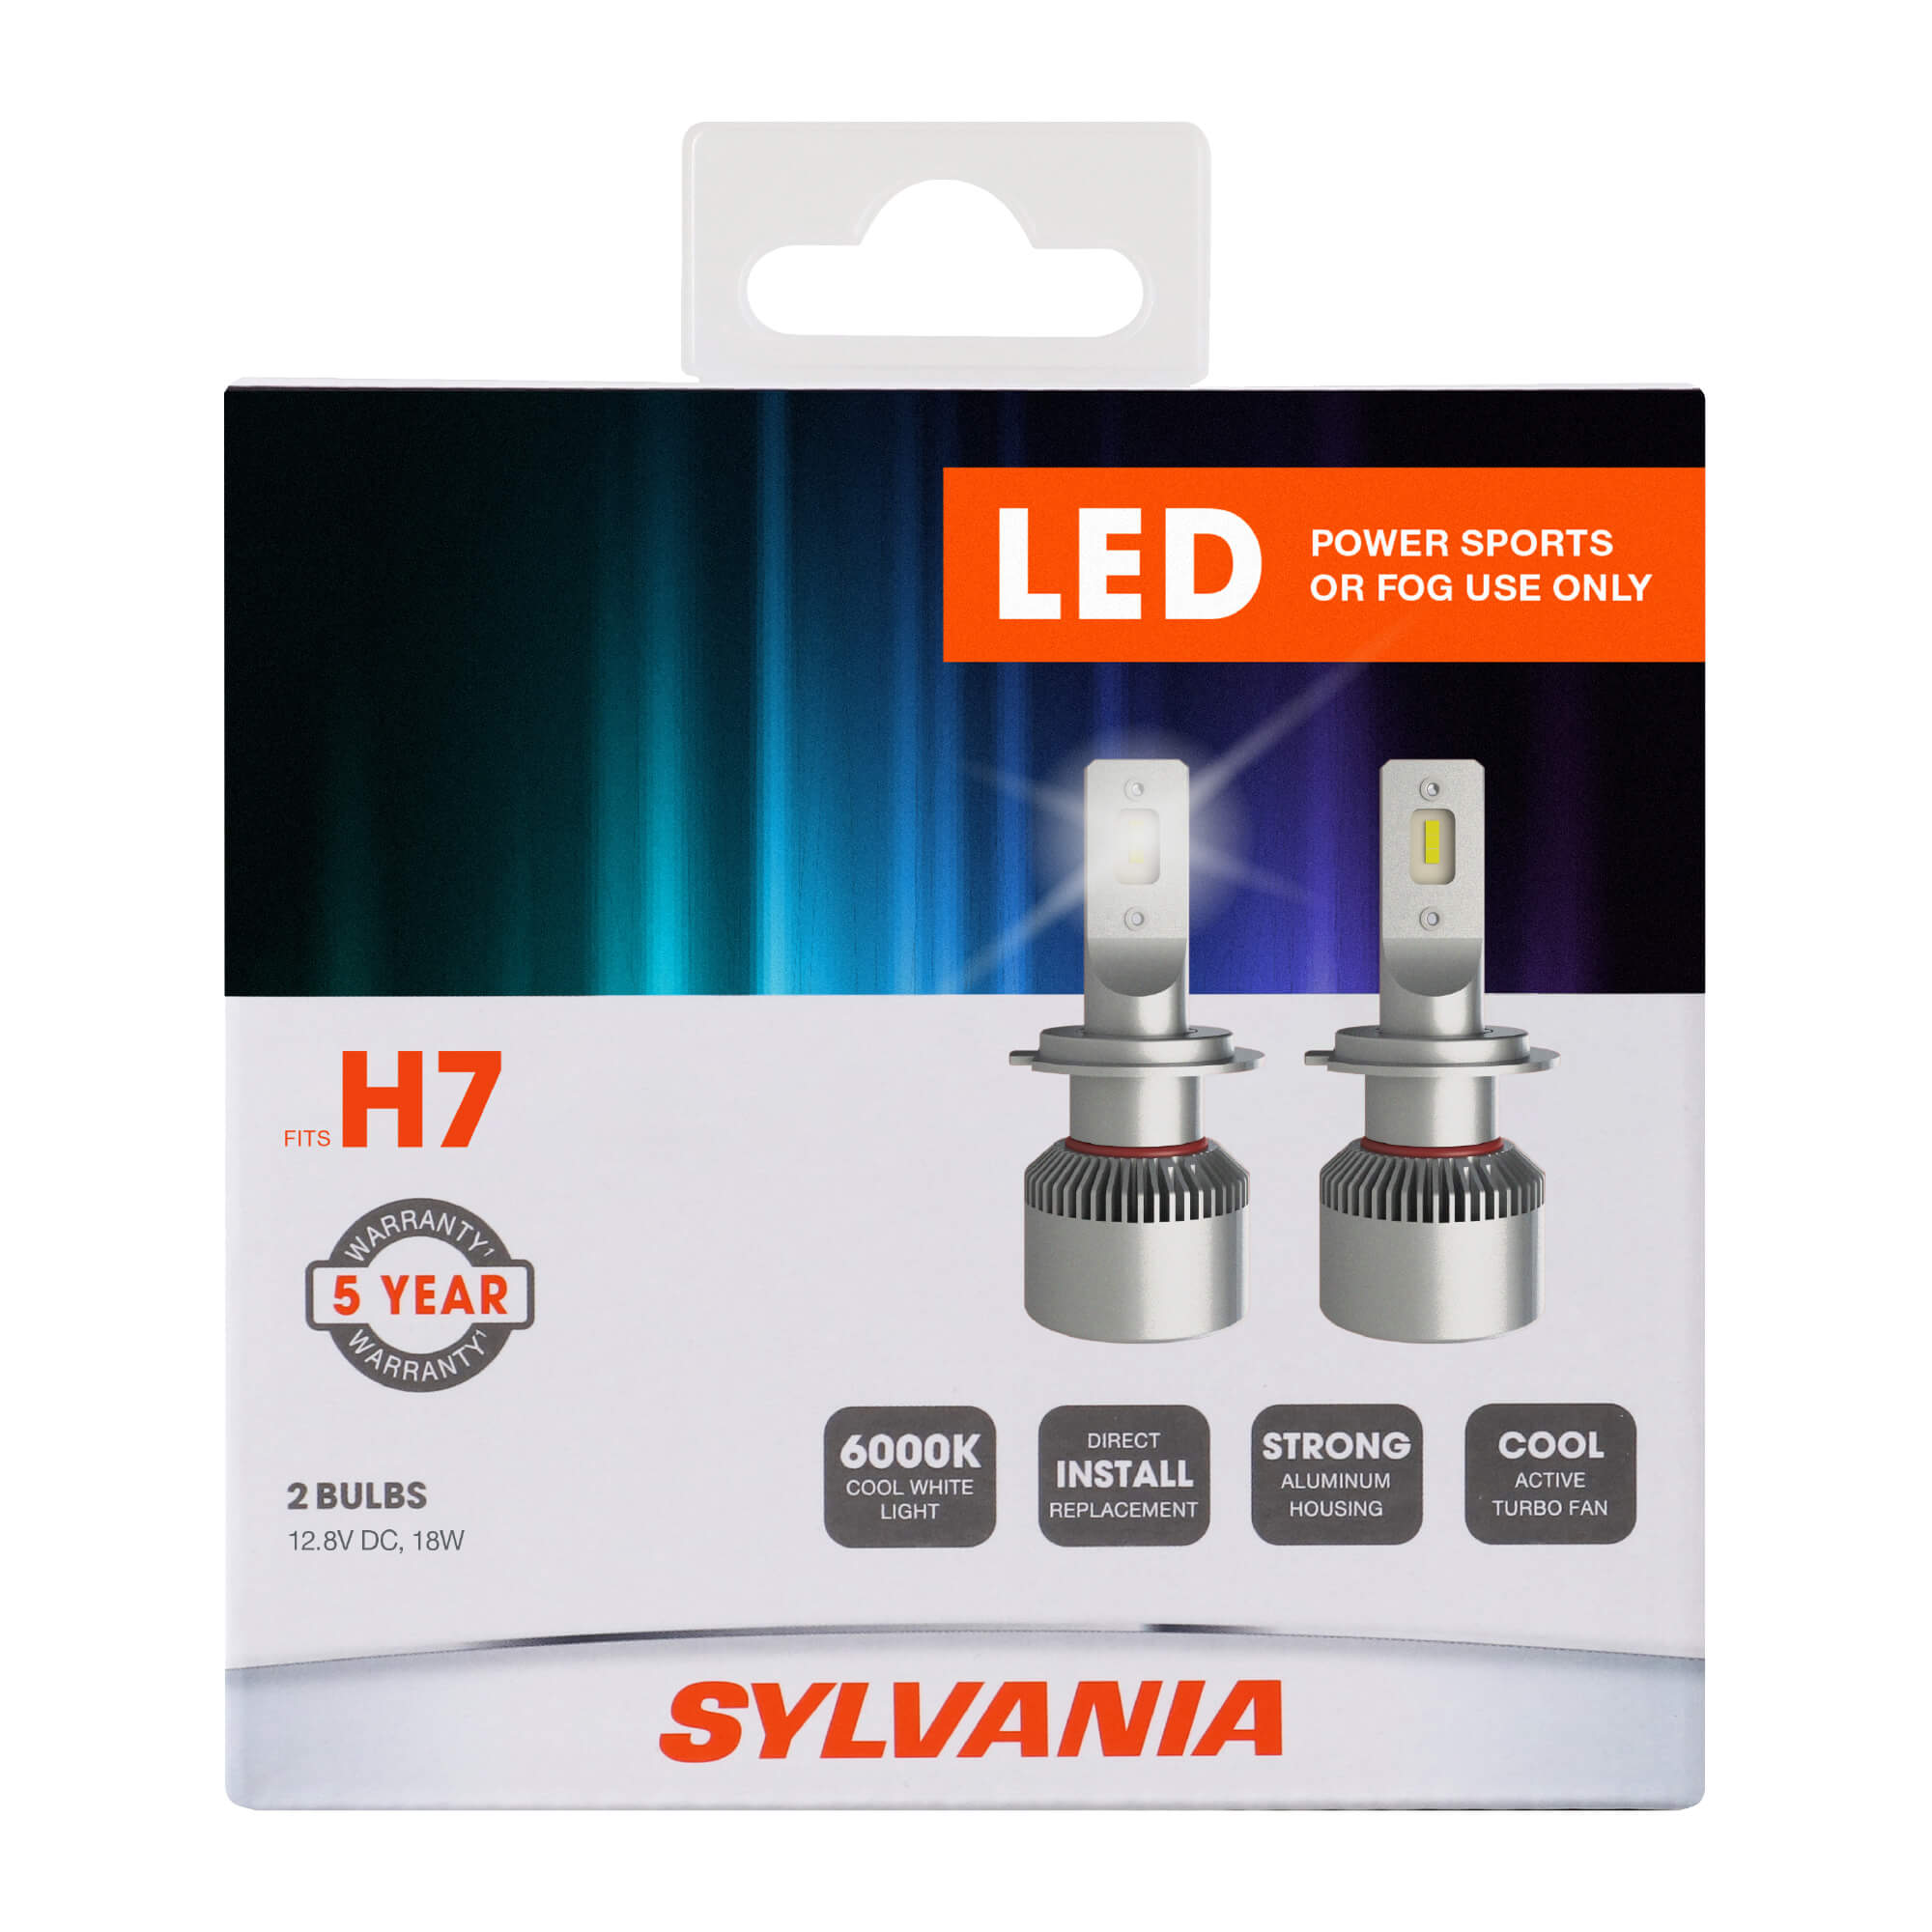 SYLVANIA H7 LED Fog & Powersports Bulb, Pack